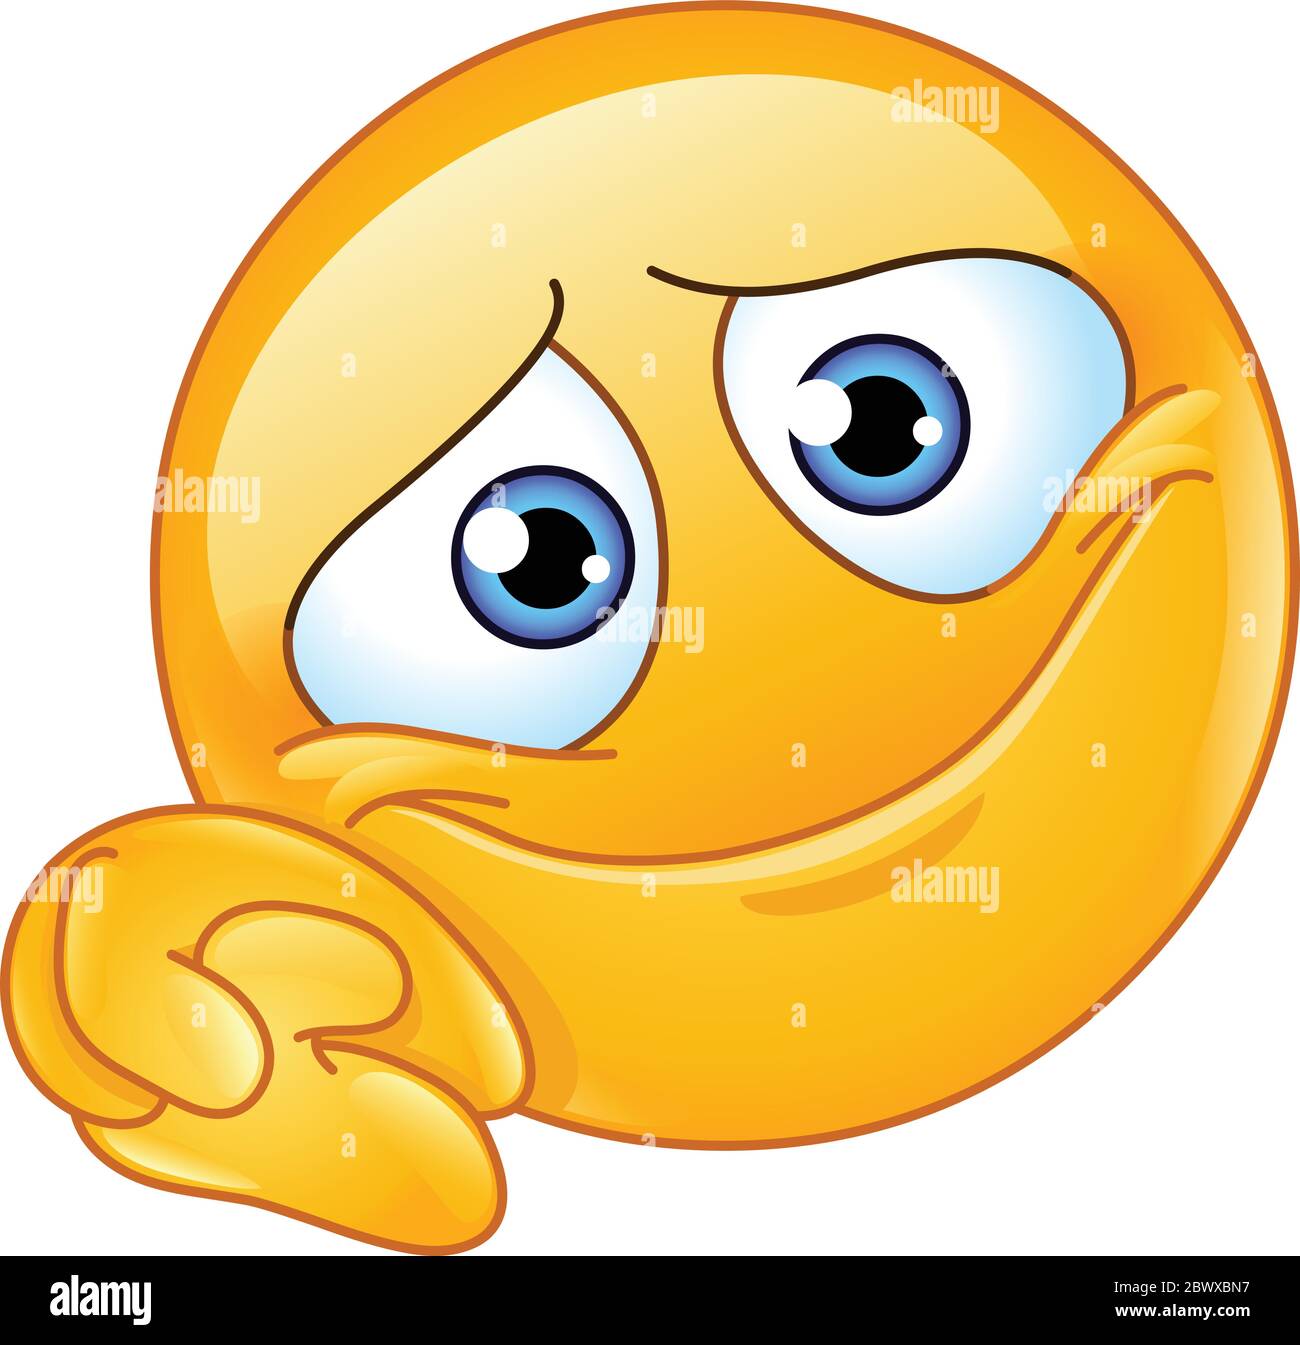 Emoticon emoji toccata con testa appoggiata su mani aggrappate che mostrano una posa tenera che guarda nell'amore o nel sogno di un giorno Illustrazione Vettoriale